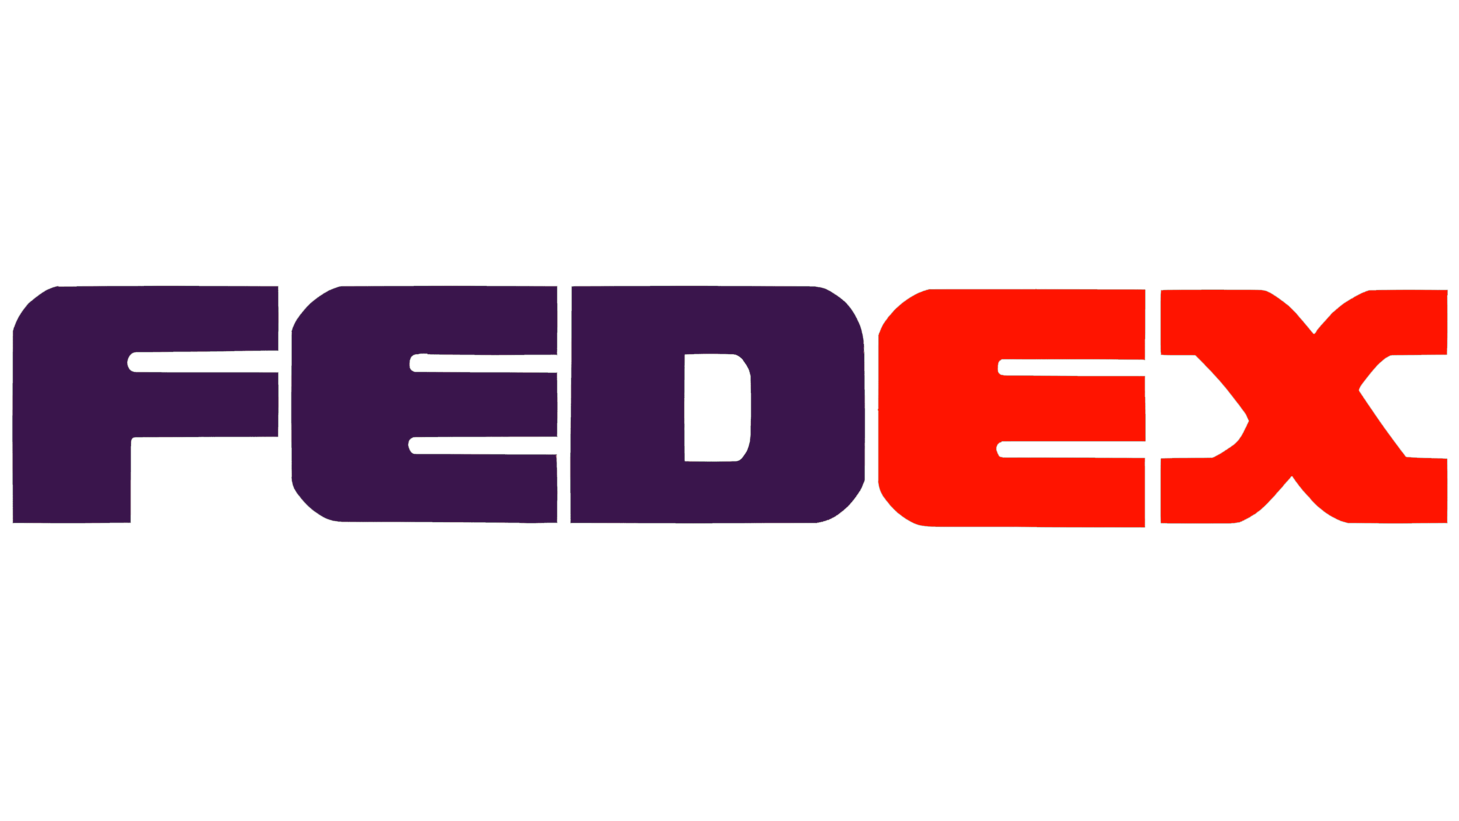 Fedex sign 1991